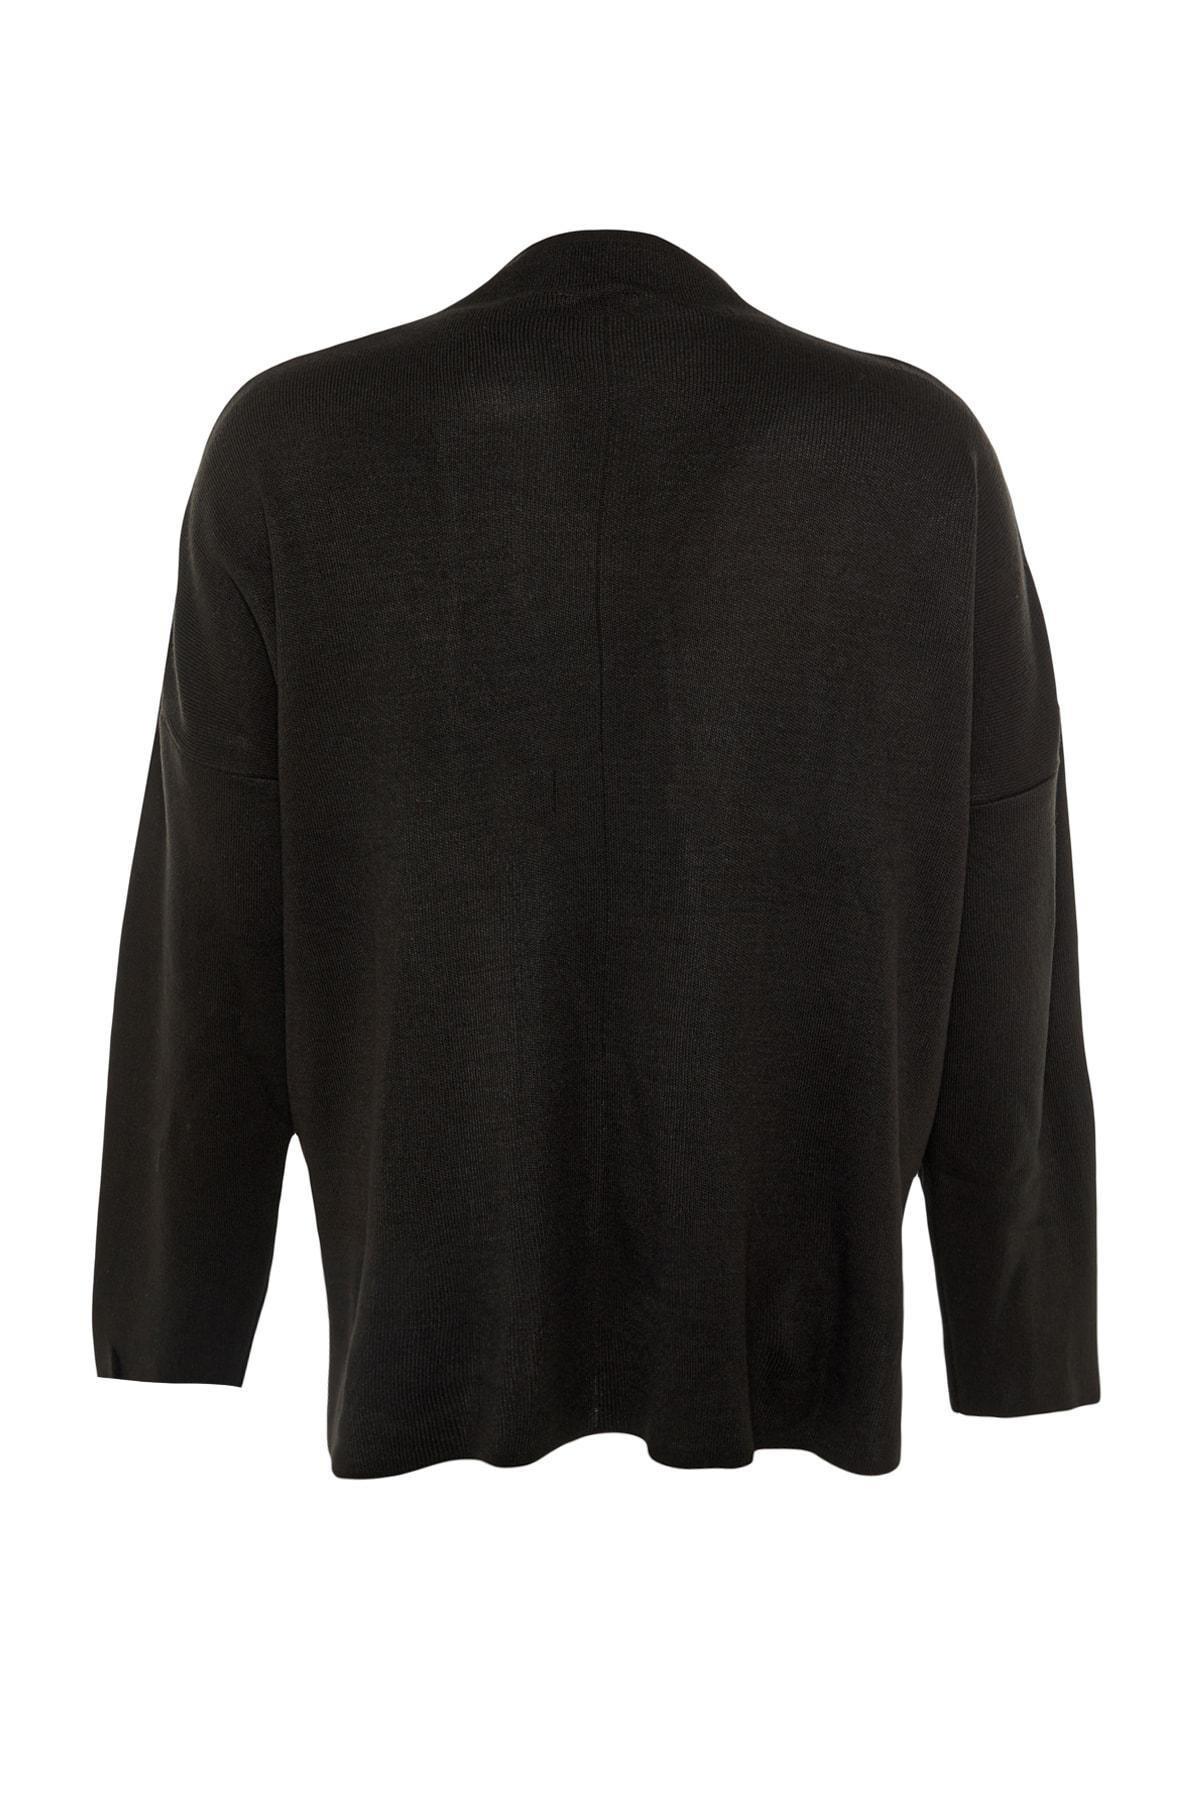 Trendyol - Black Crew Neck Plus Size Sweater